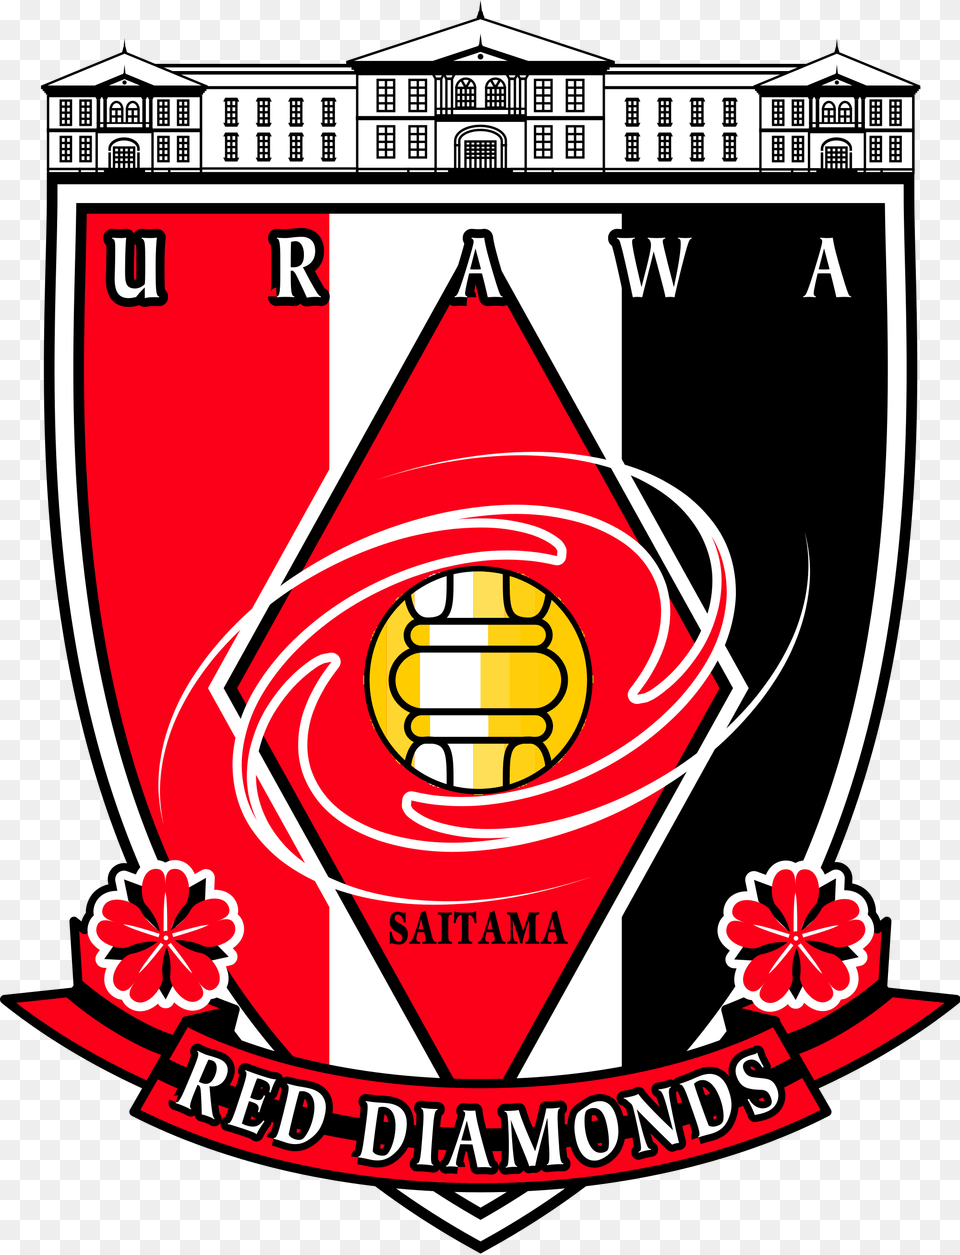 Urawa Red Diamonds Logo, Emblem, Symbol, Badge, Dynamite Free Transparent Png